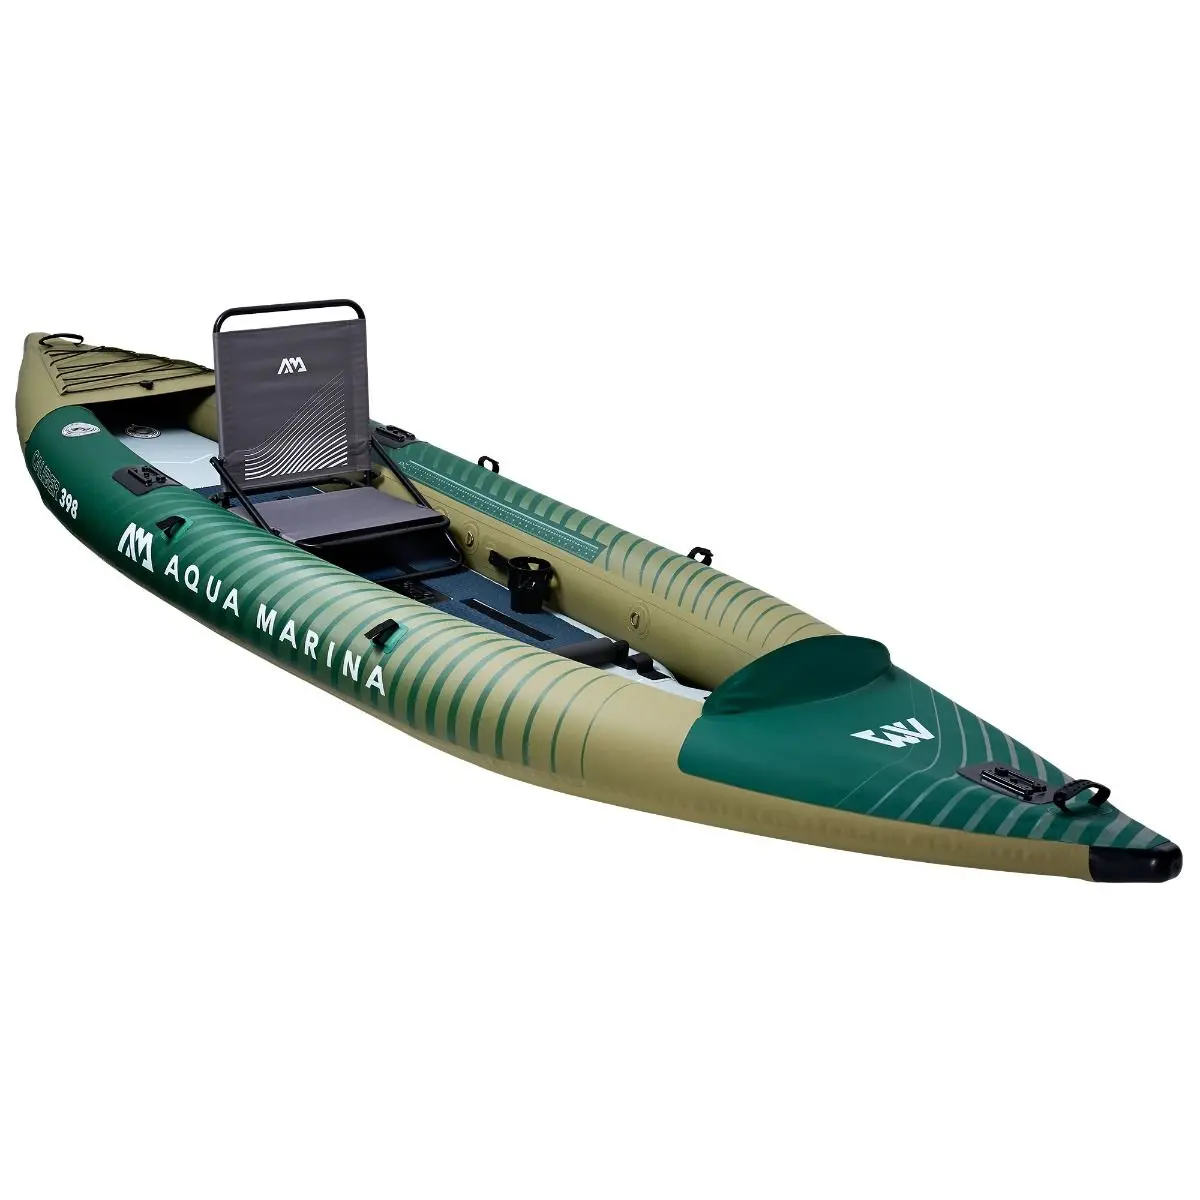 Aqua Marina Caliber 398 Kayak de pêche 1/2 personnes. (pagaie exclue)